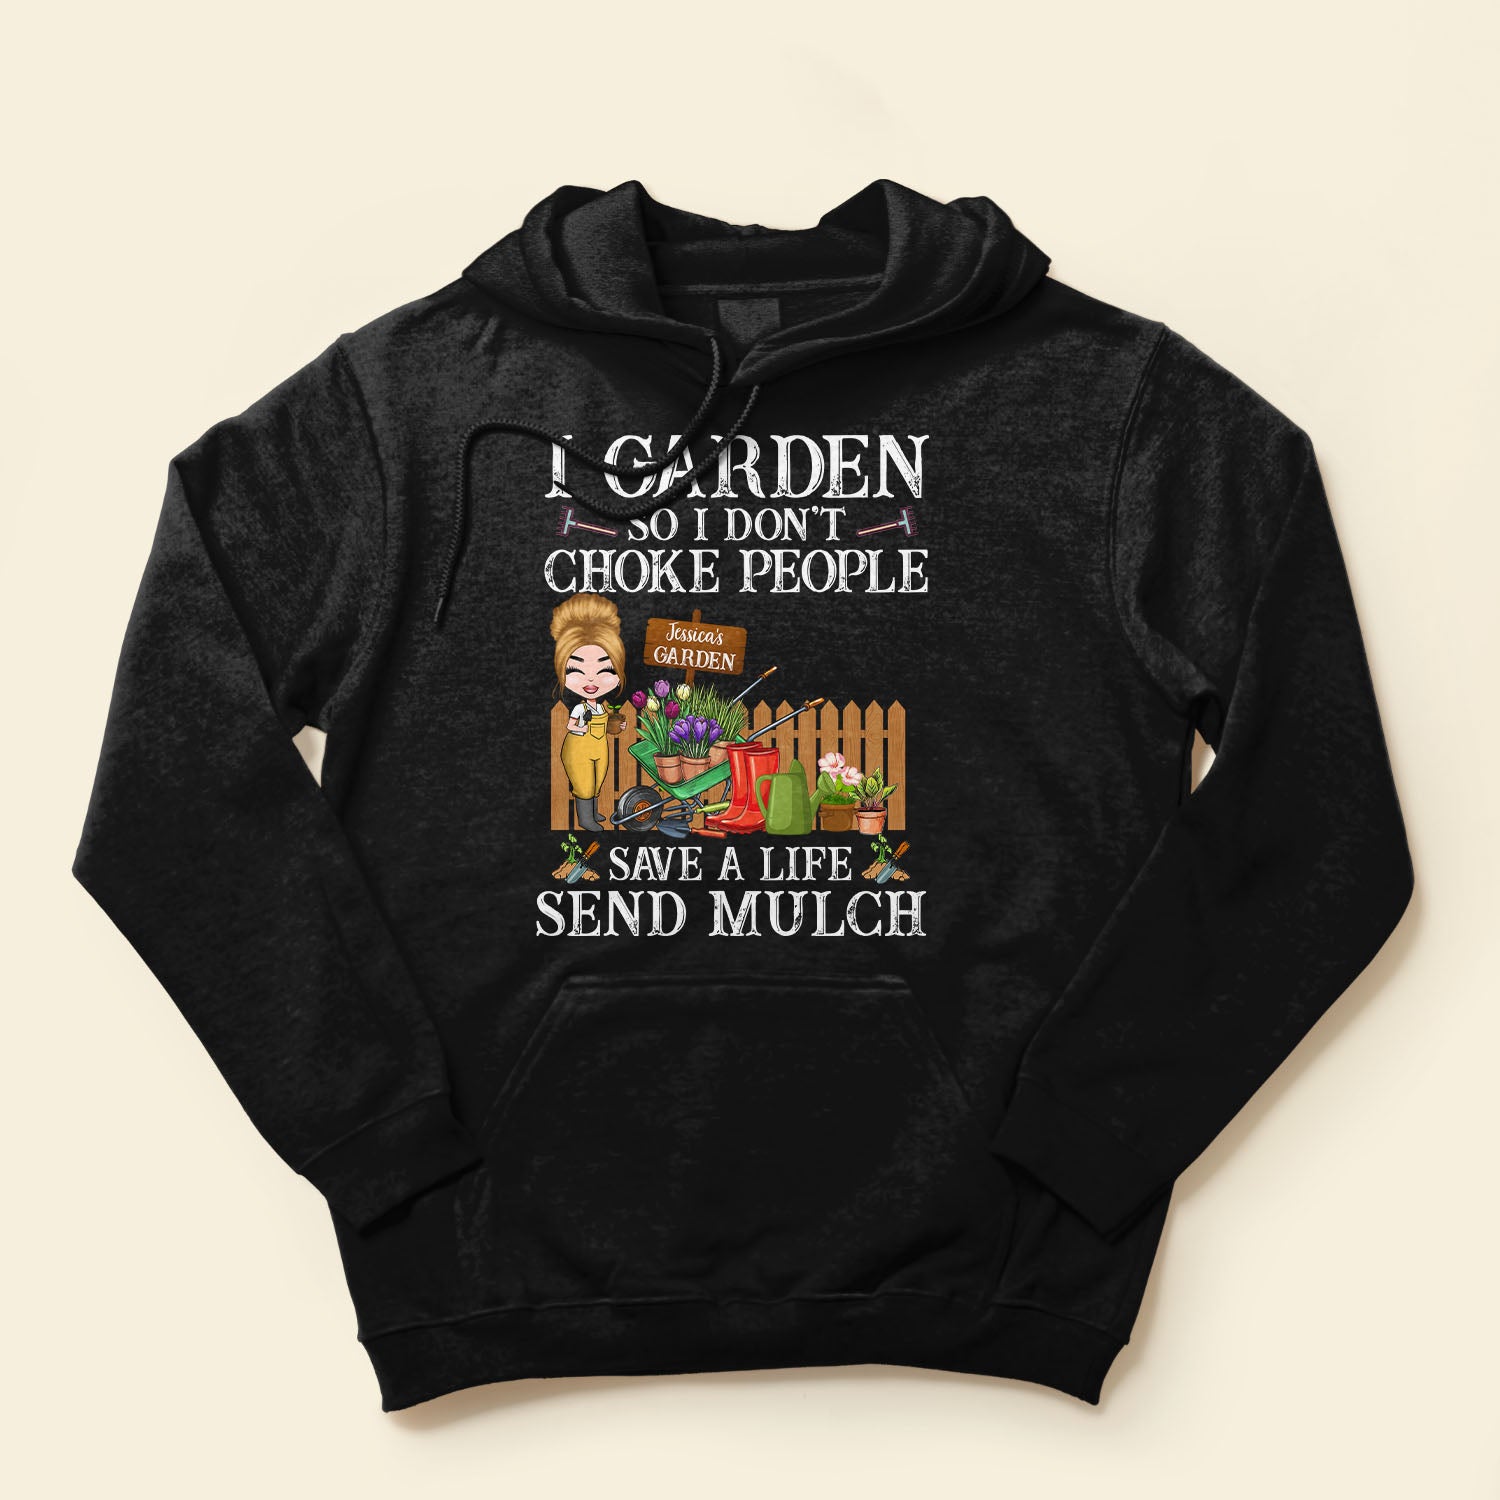 I Garden So I Don't Choke People - Personalized Shirt - Gift For Gardeners - Cartoon Gardener